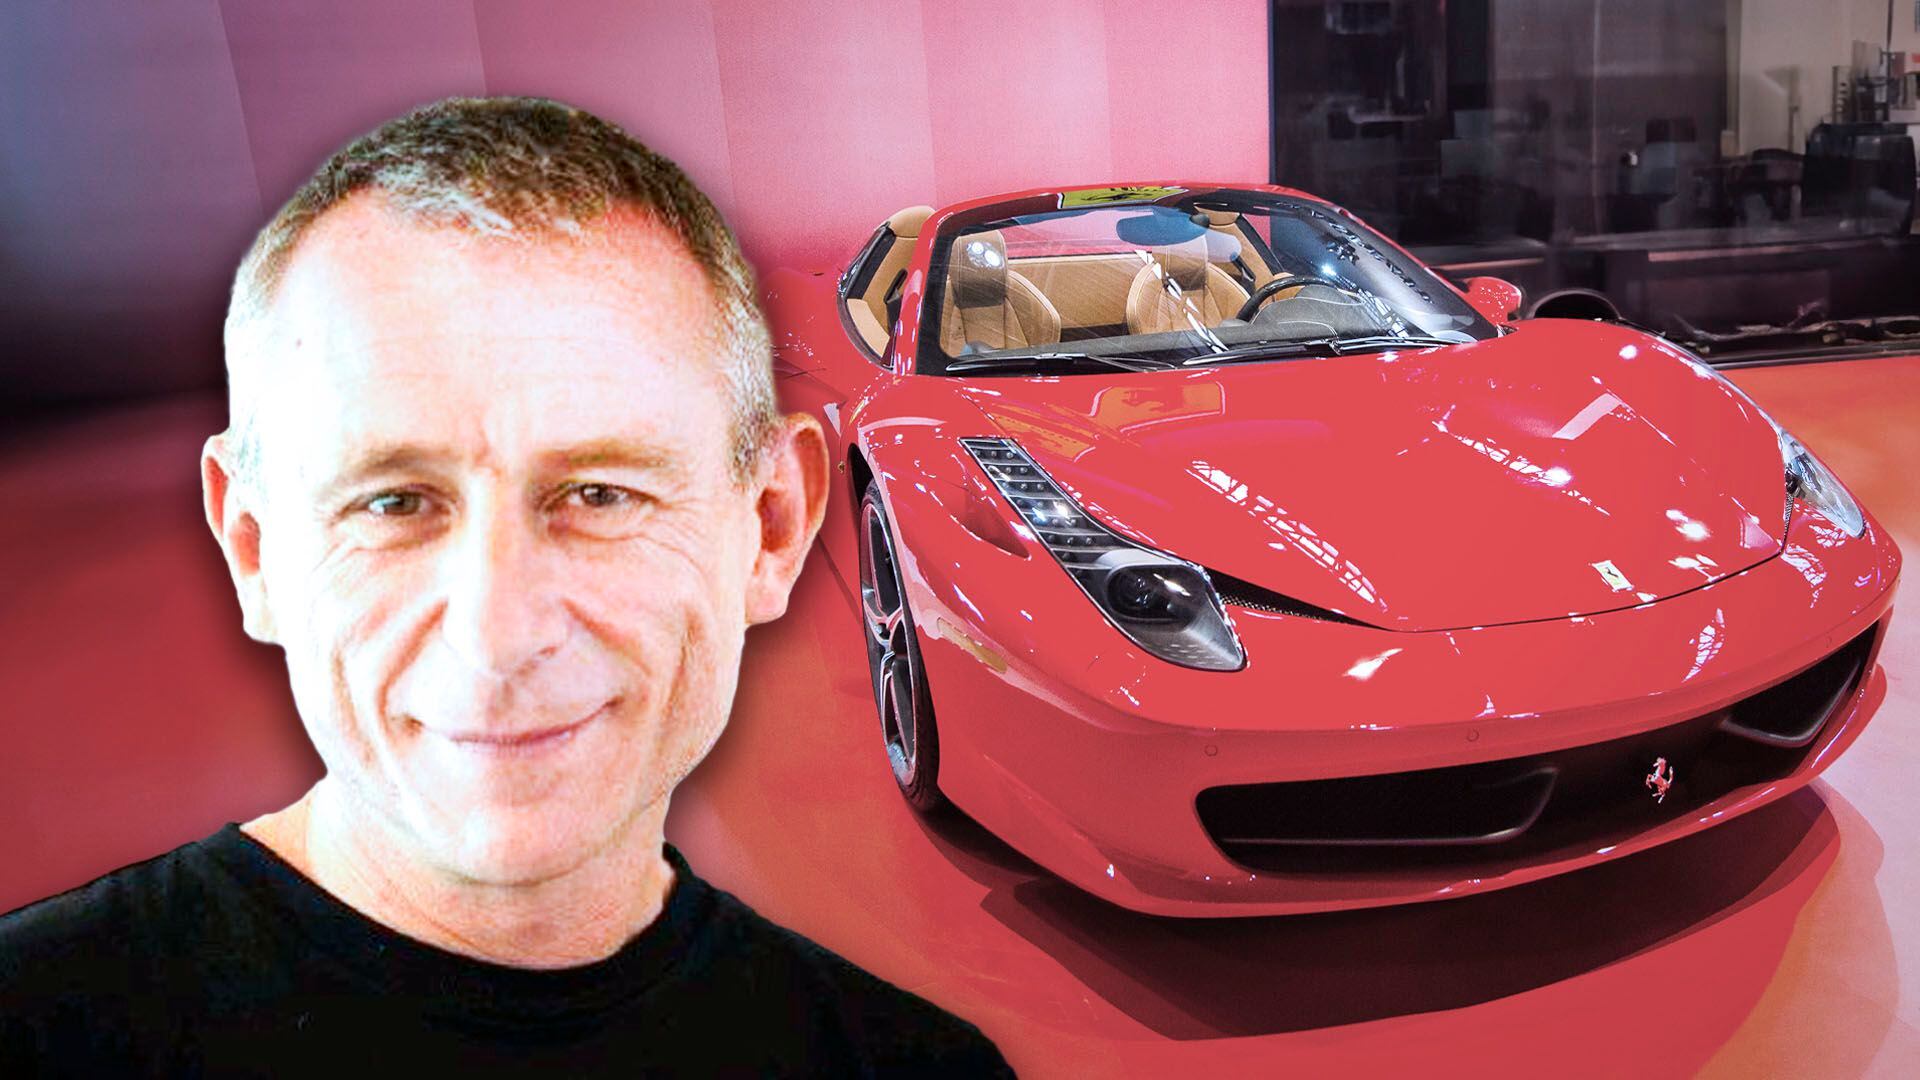 Al CEO de Wenance, Alejandro Muszak, le embargaron su Ferrari